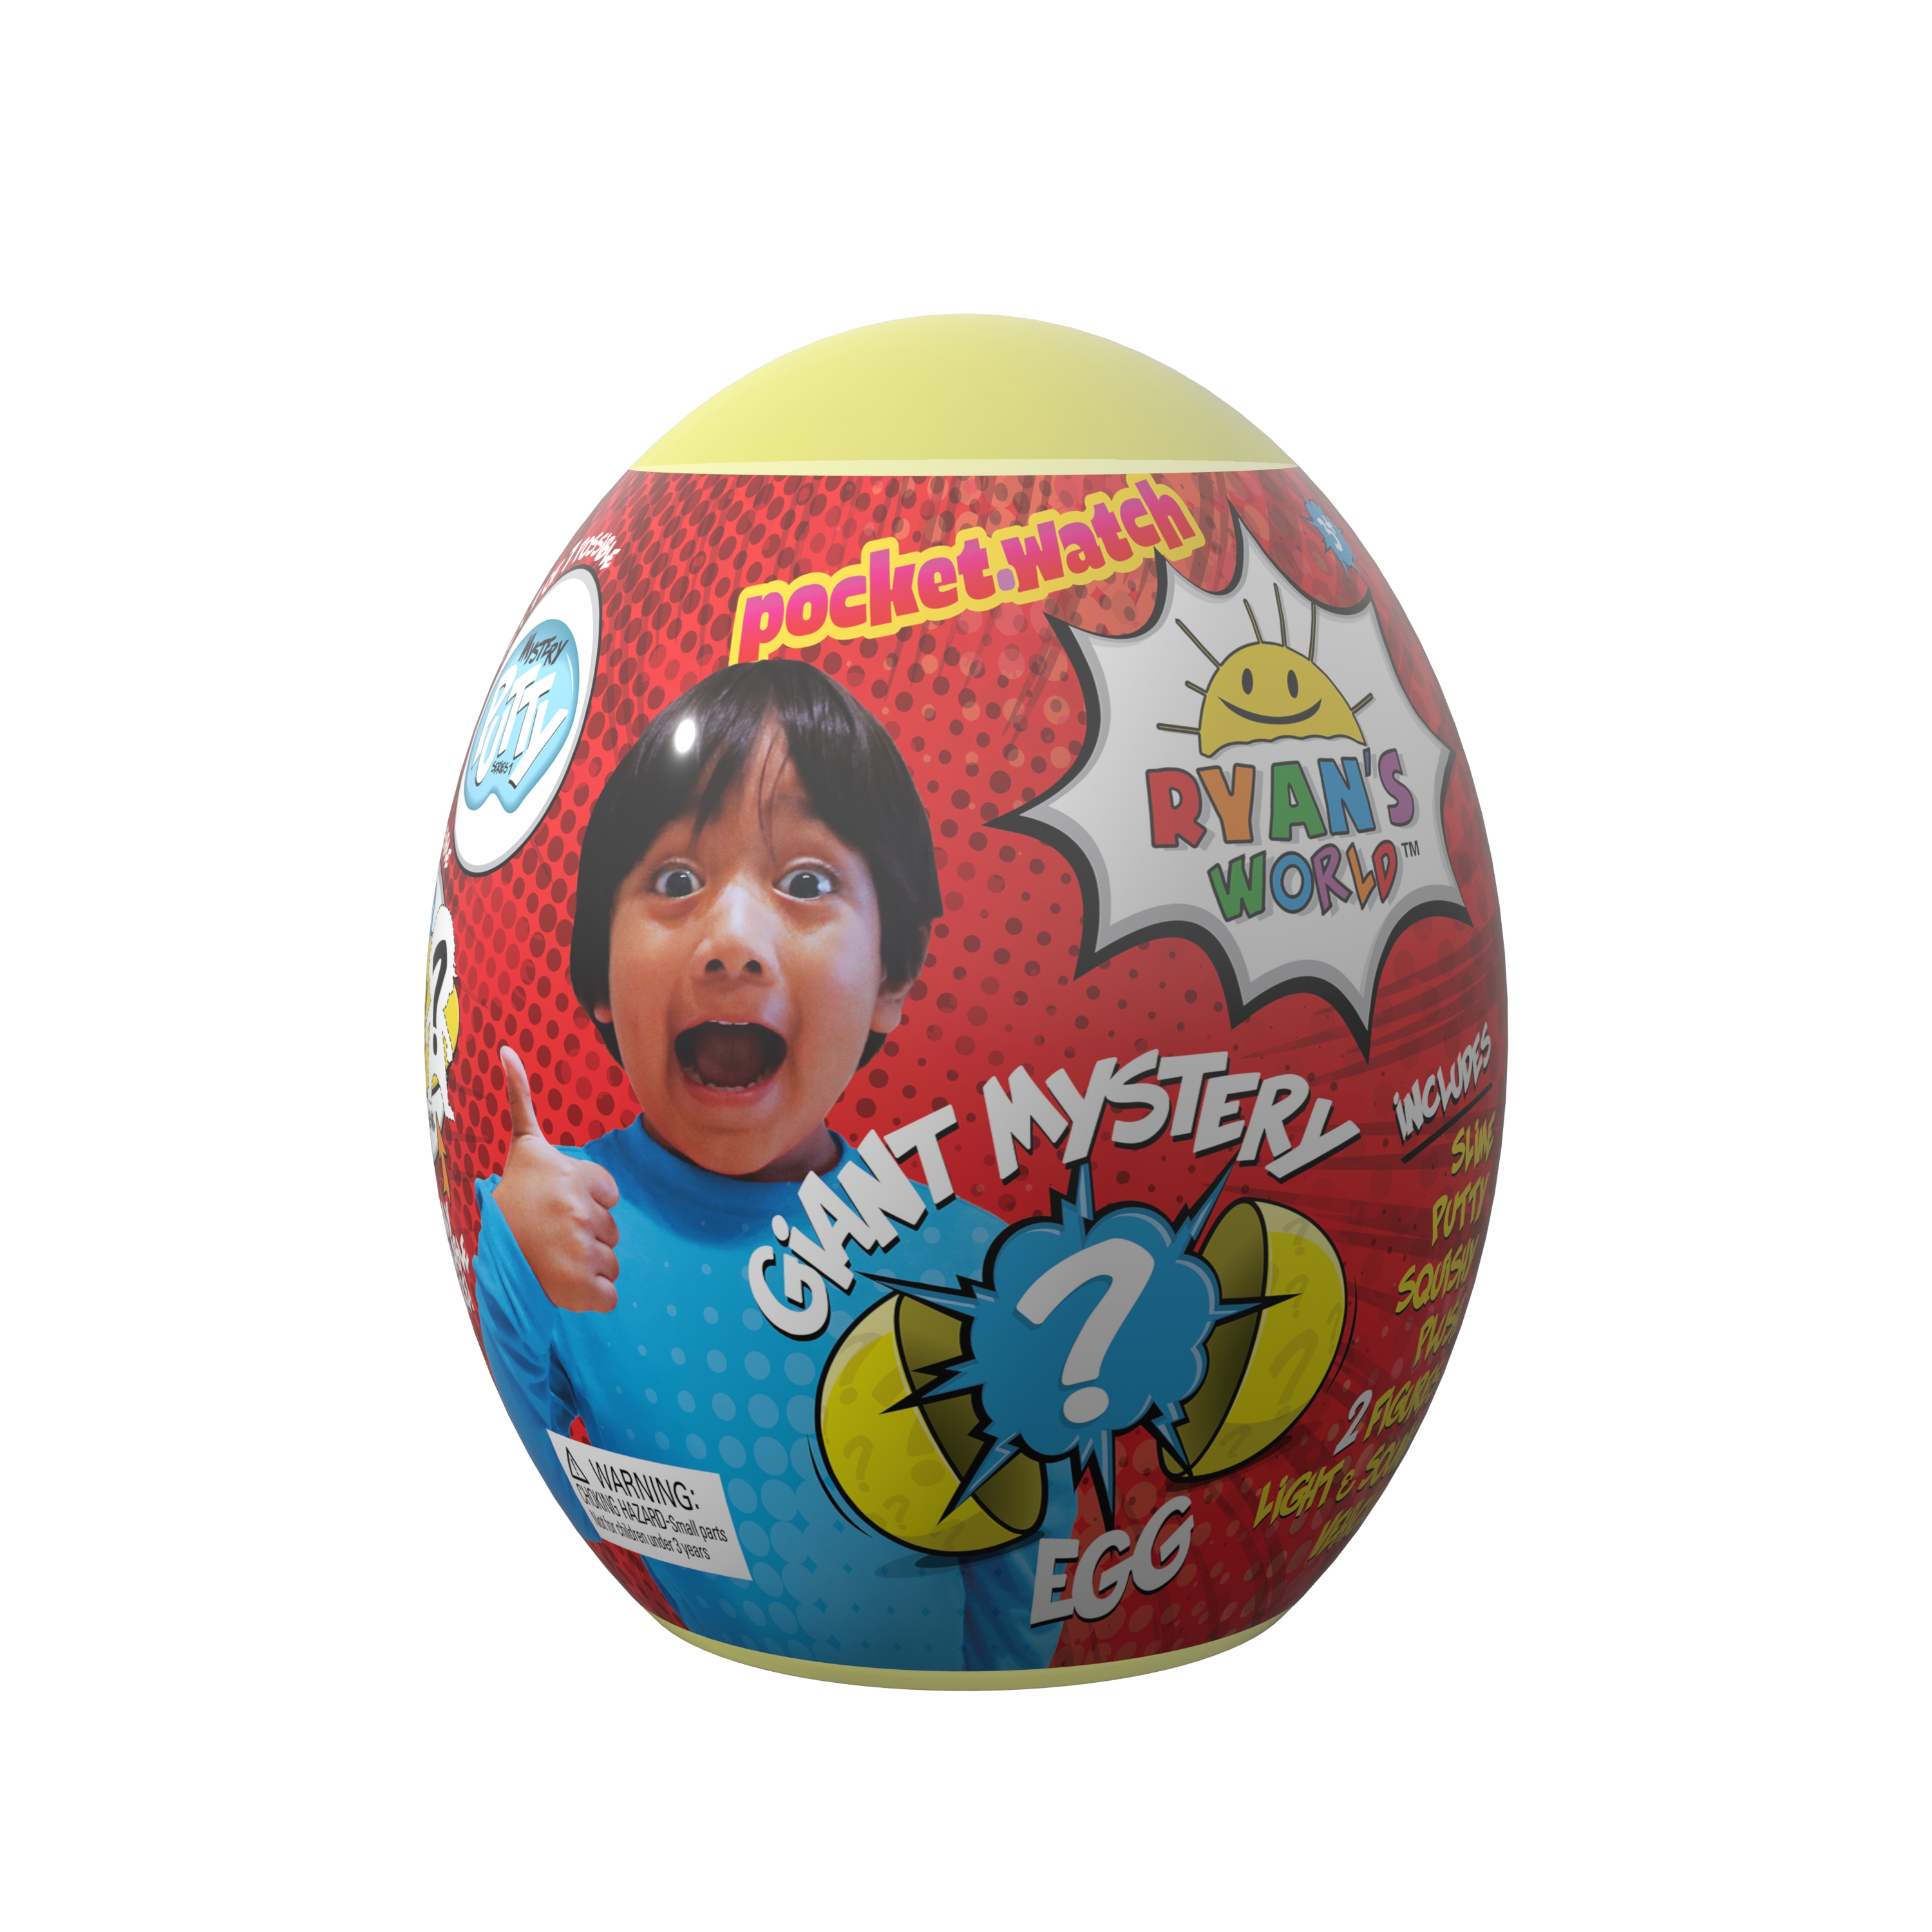 Ryans World Giant Mystery Egg - image 6 of 8